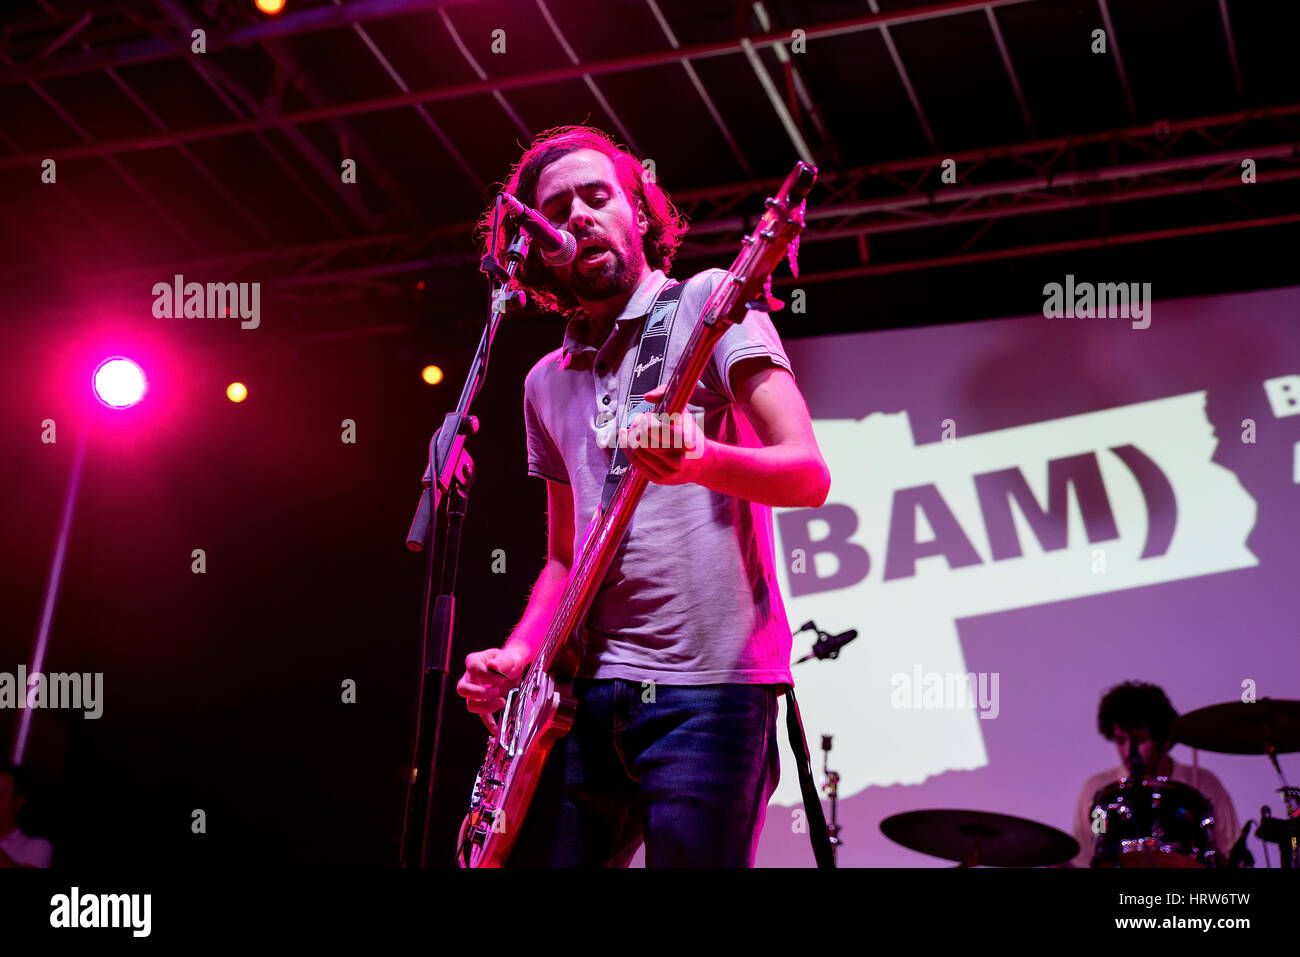 Barcelone - 18 SEPT : Plage Plage (band) en concert au Festival Bam le 18 septembre 2015 à Barcelone, Espagne. Banque D'Images